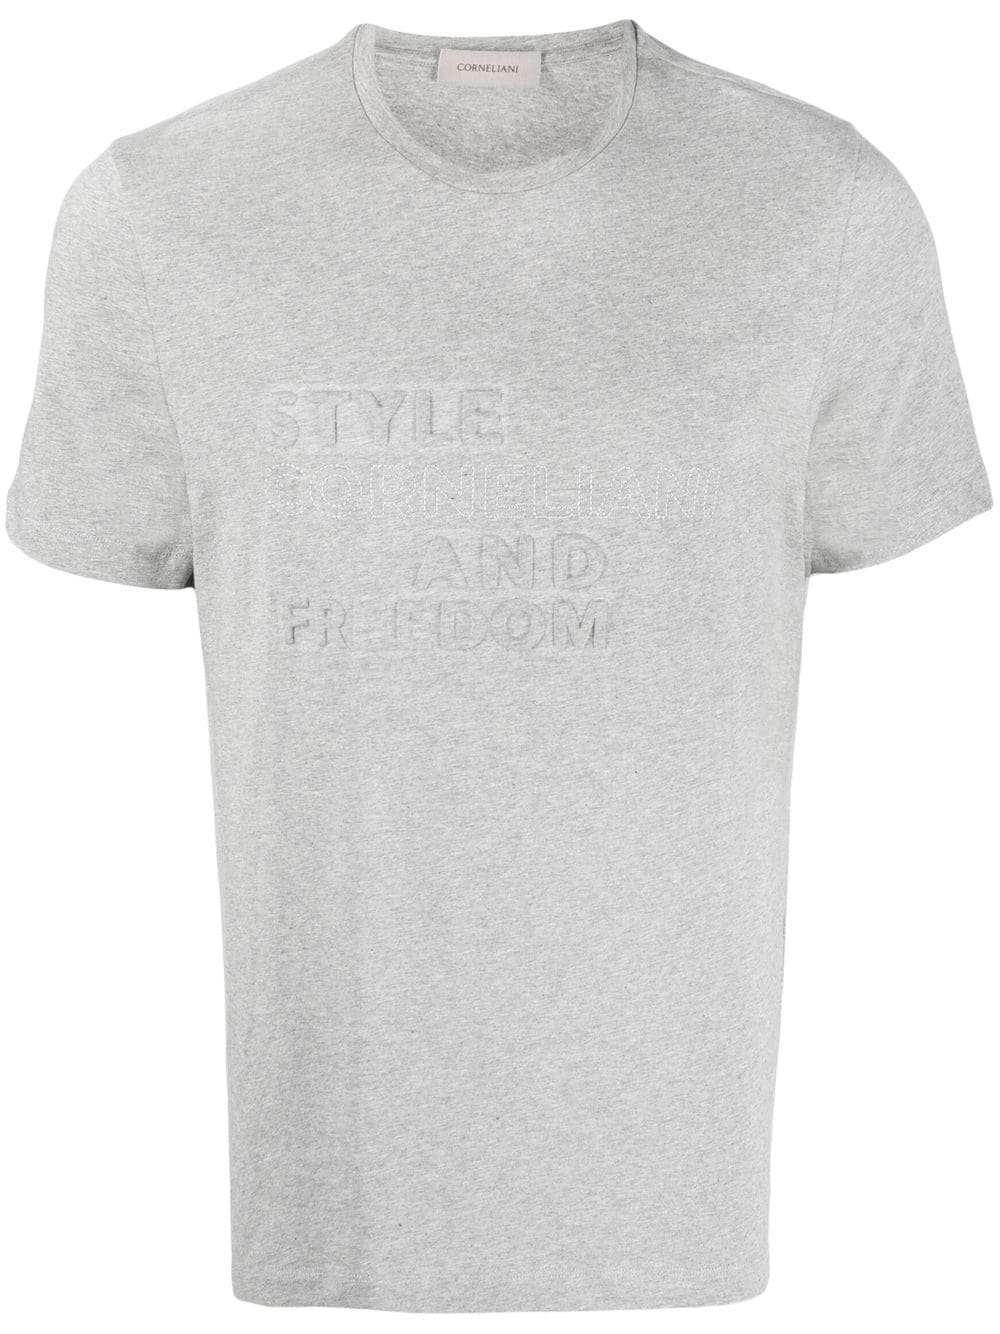 corneliani t-shirt à slogan imprimé - gris